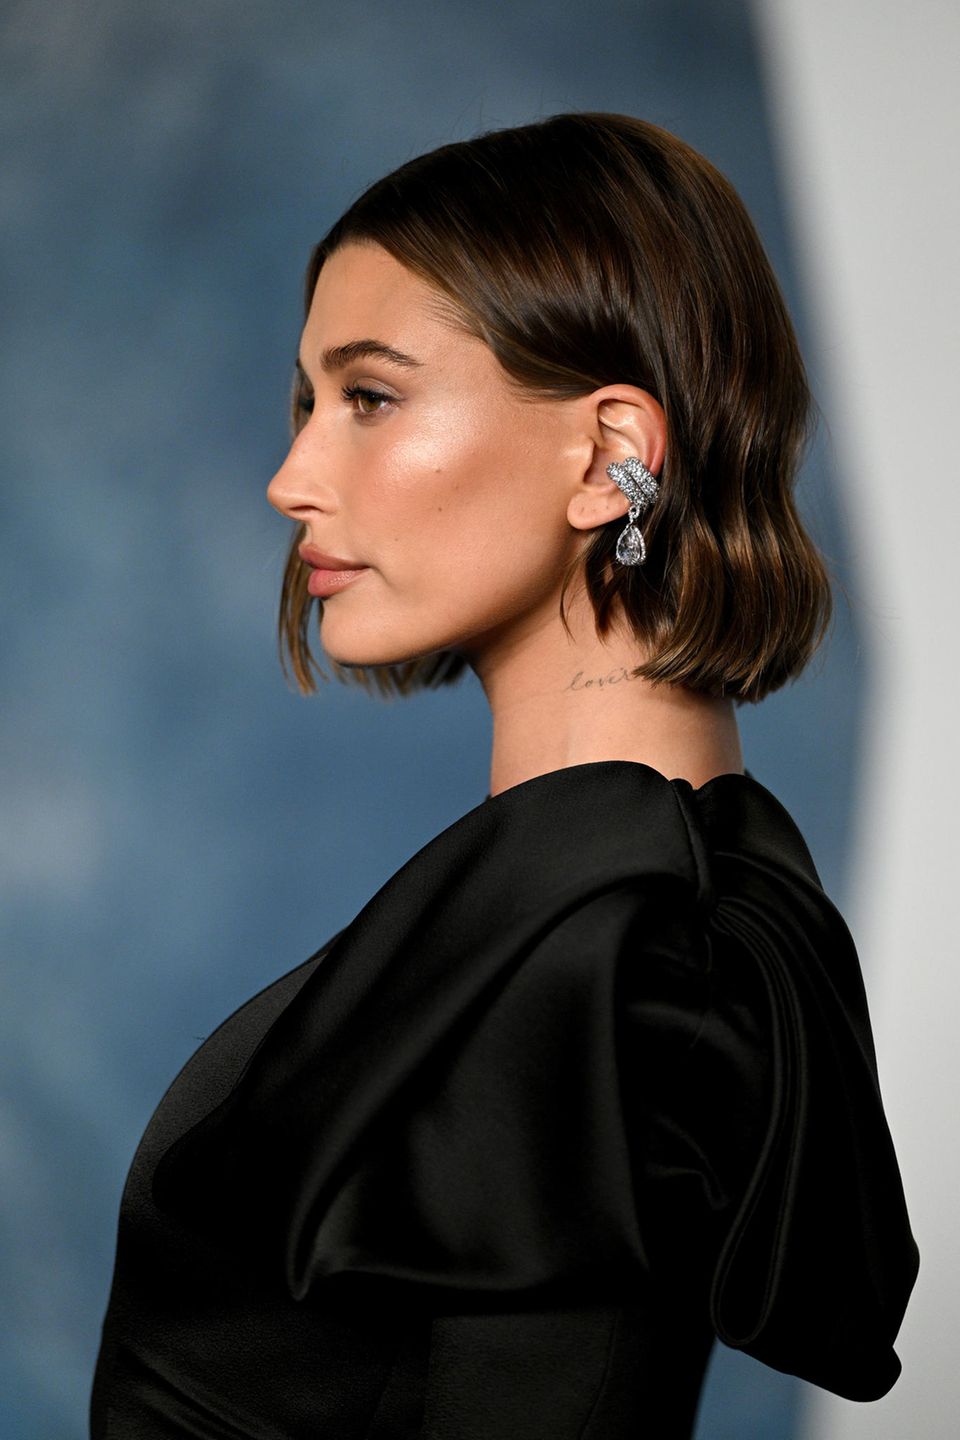 Das It-Girl Hailey Bieber schmückt sich für die Oscar-Nacht mit zwei XXL-Ear-Cuffs in der Trendfarbe Silber.